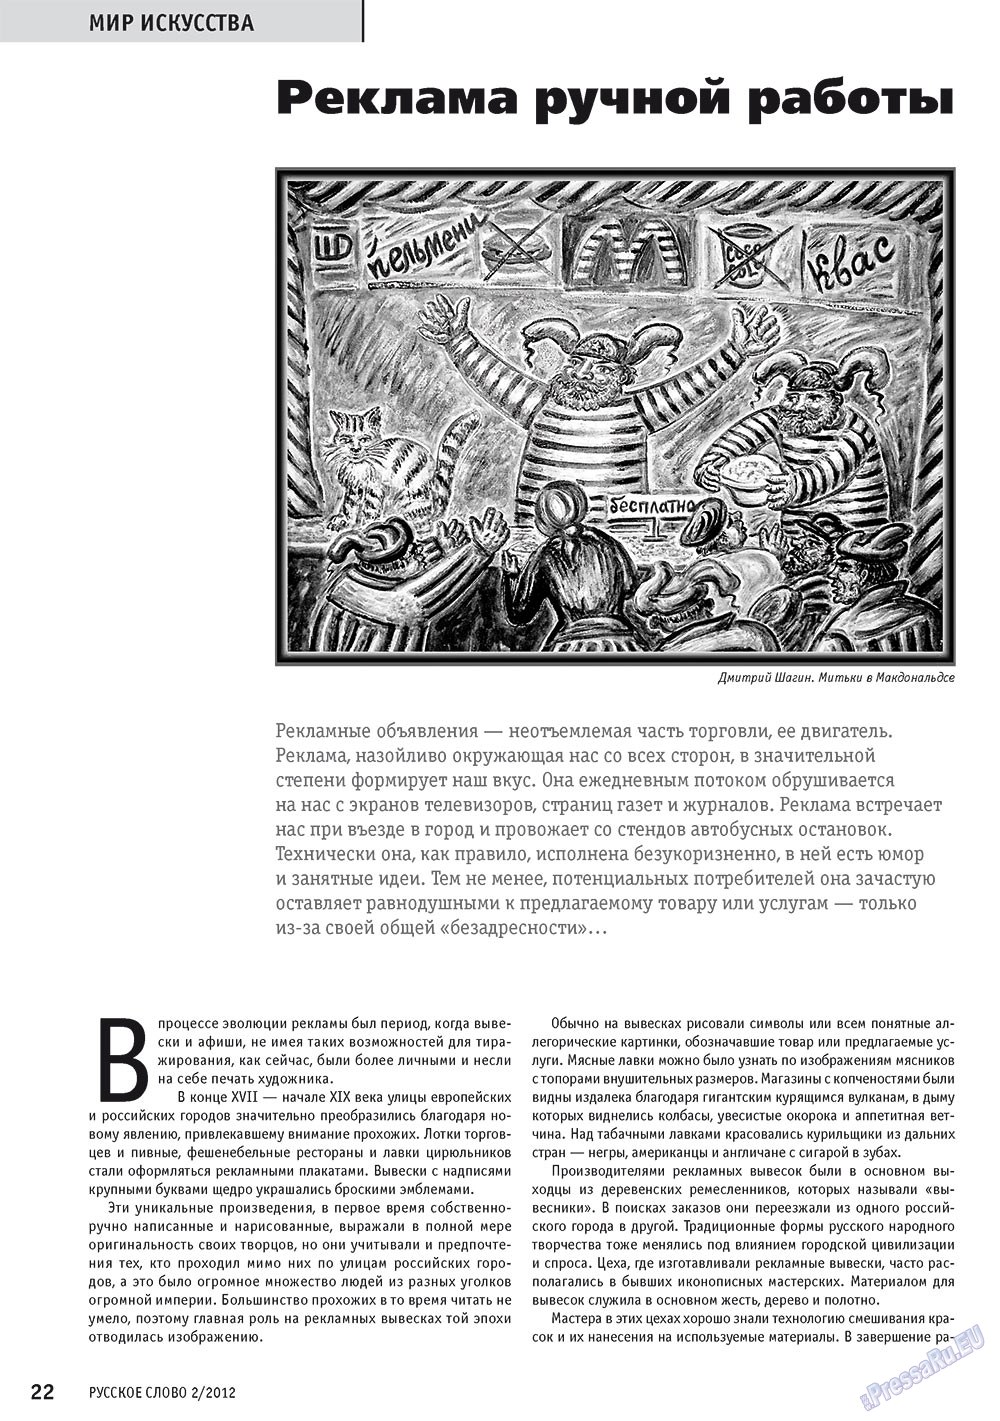 Русское слово (журнал). 2012 год, номер 2, стр. 24